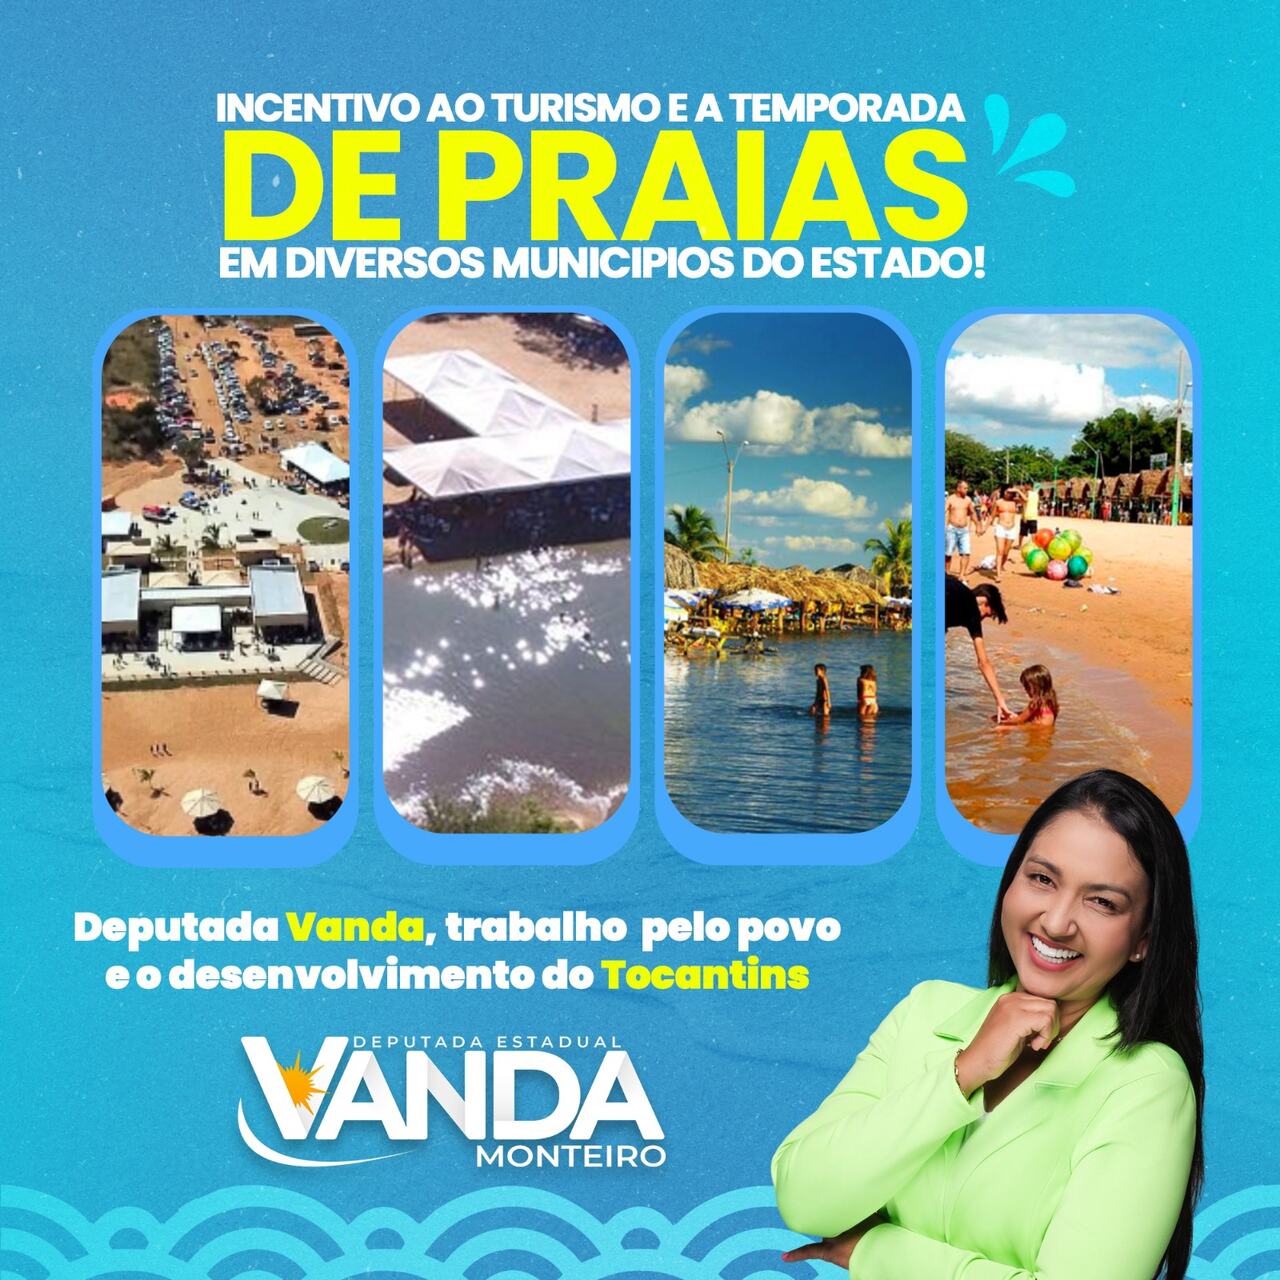 Deputada Vanda Monteiro incentiva o turismo de praias em diversos municípios do Tocantins